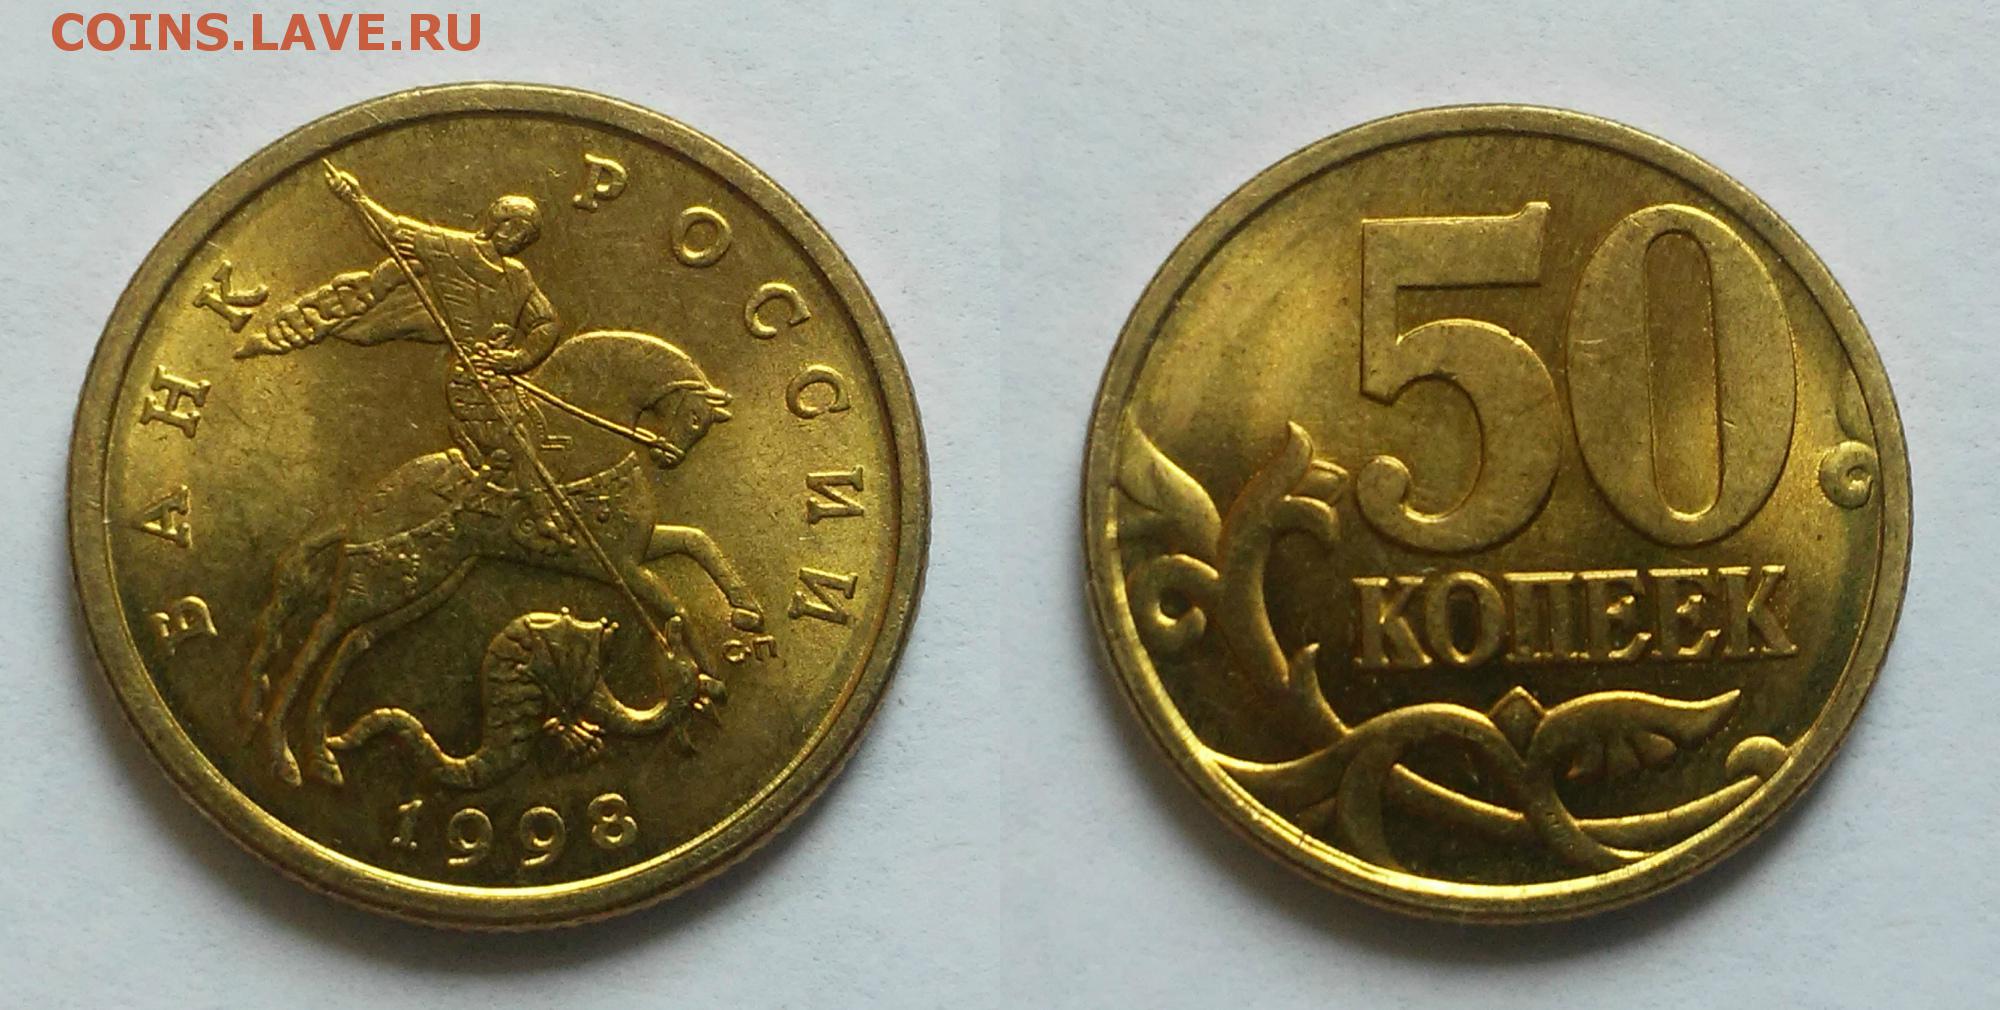 5 рублей бонус. 1 Коп 2005м--шт.г. 10 2005 М б1. Почерневшая 10 копеек 2005 г. Bonus Coin.